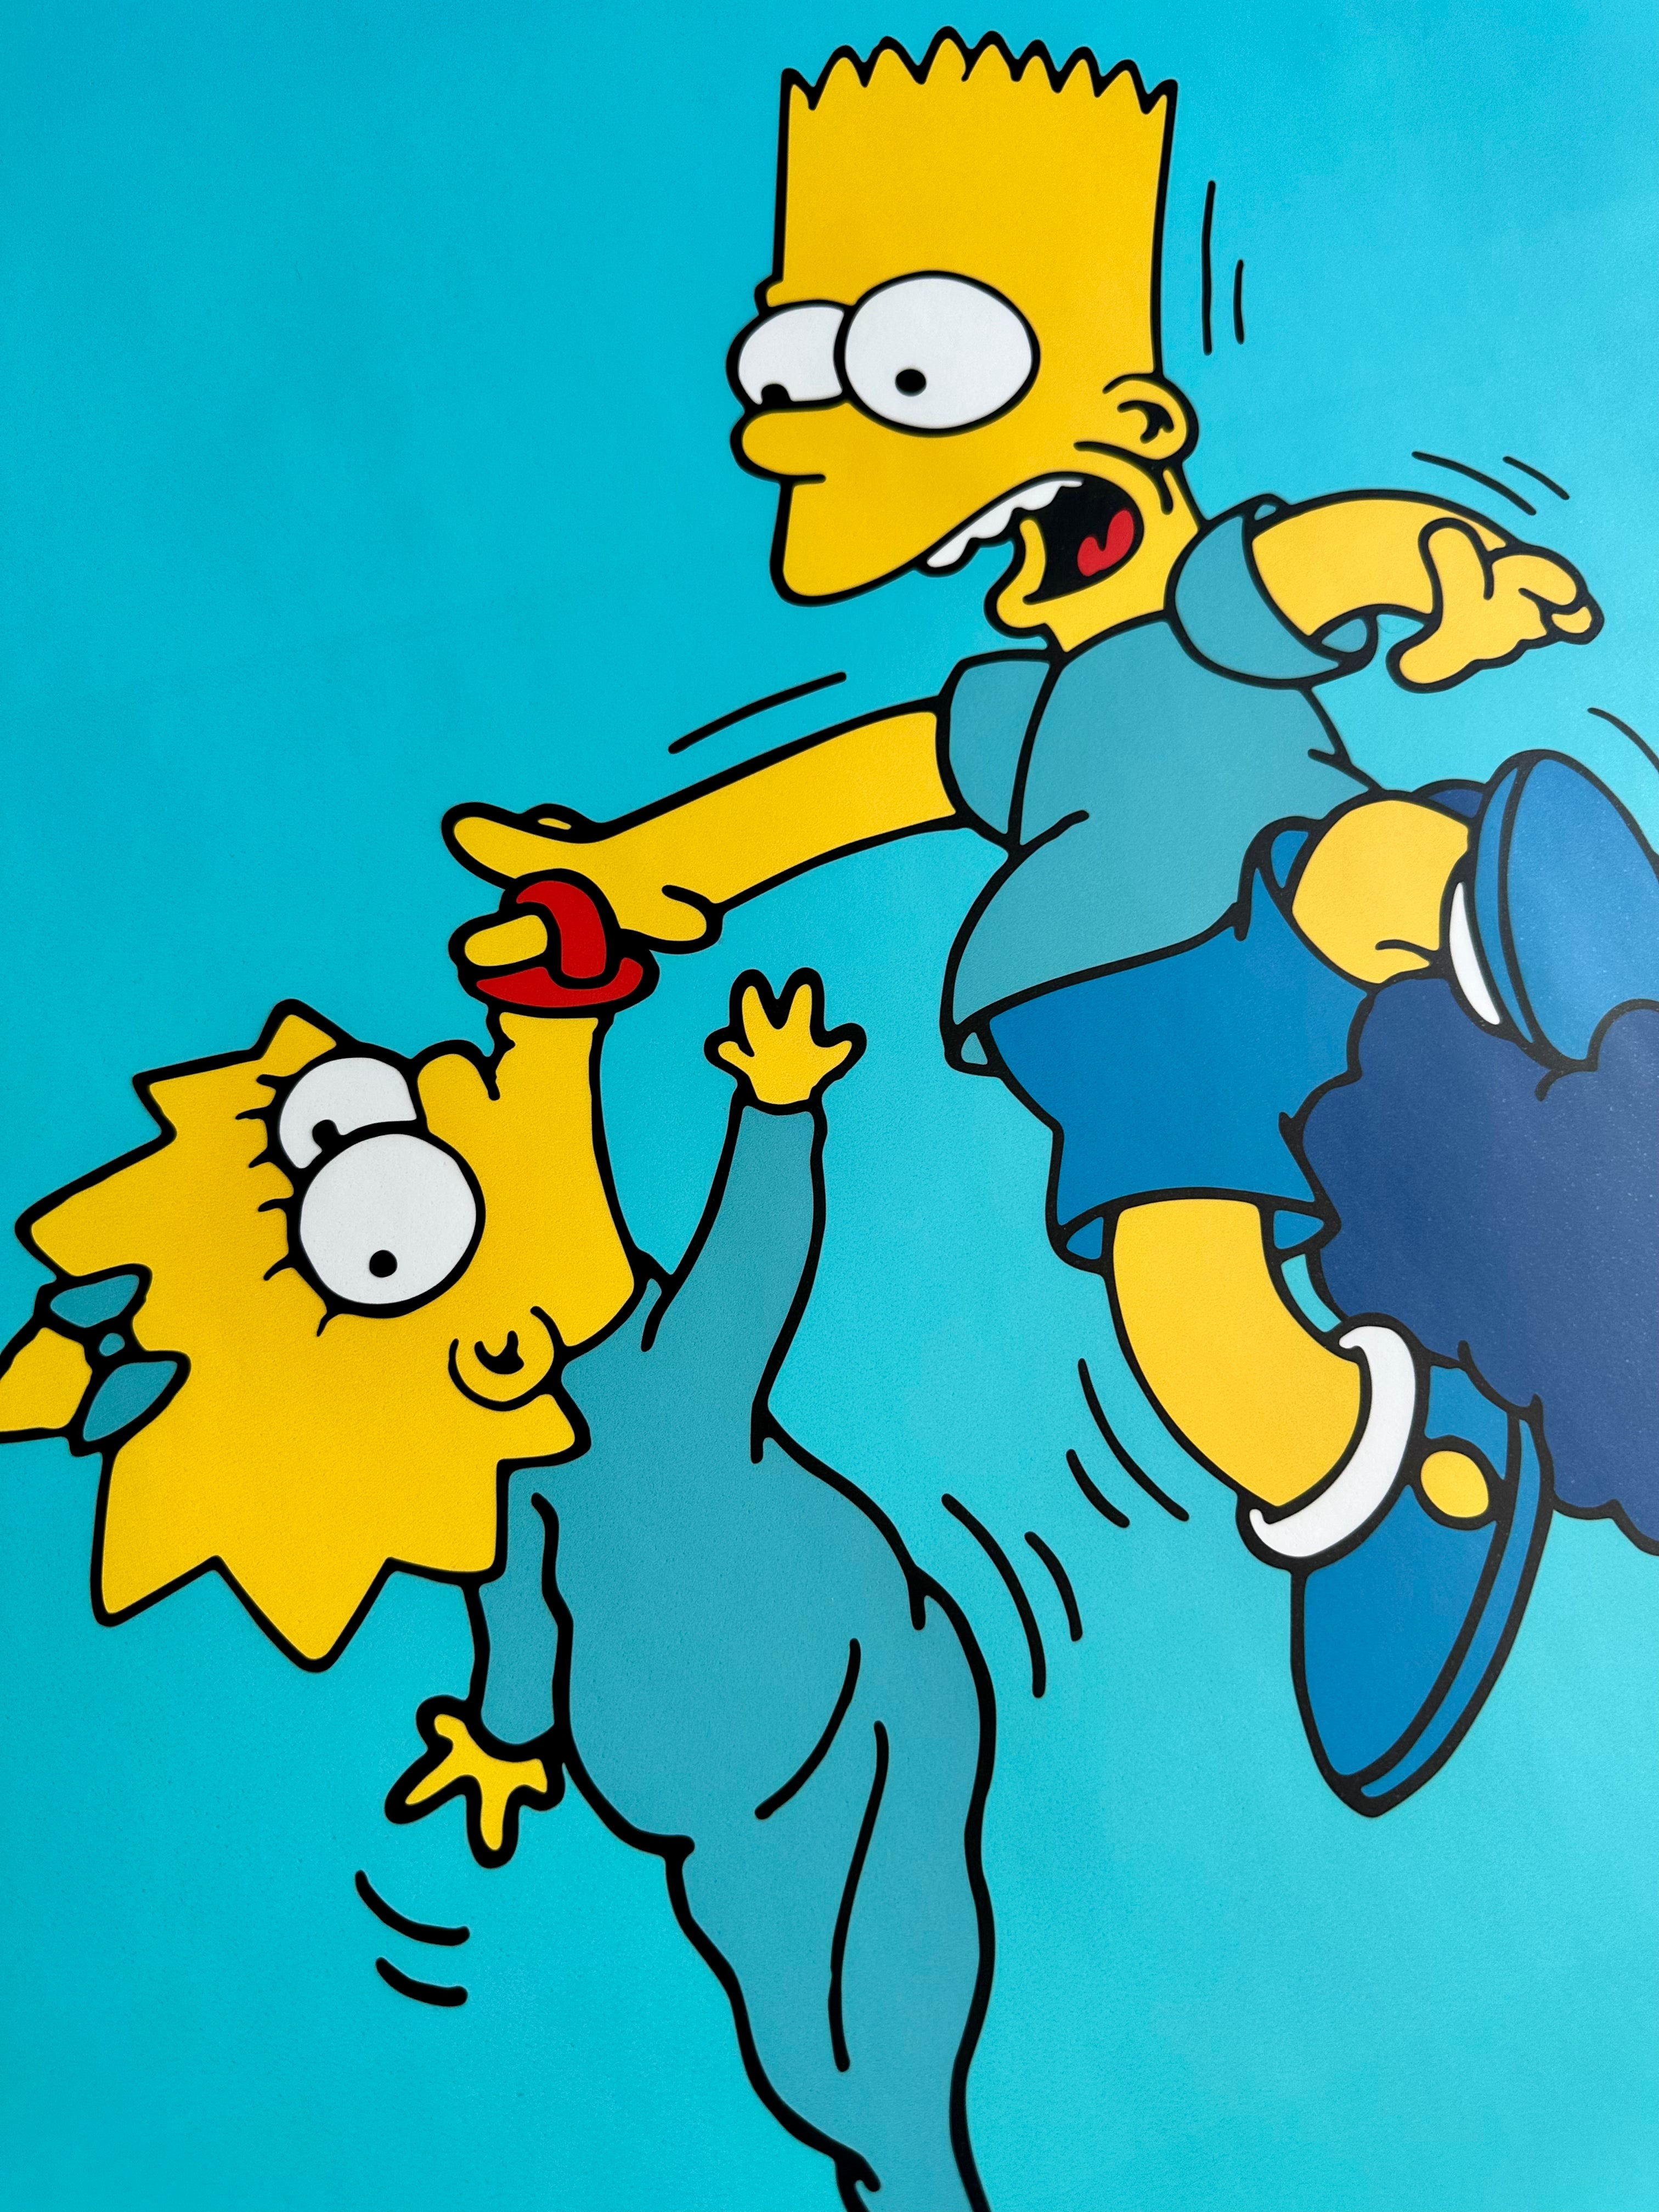 Arte lateral de Los Simpson con degradado